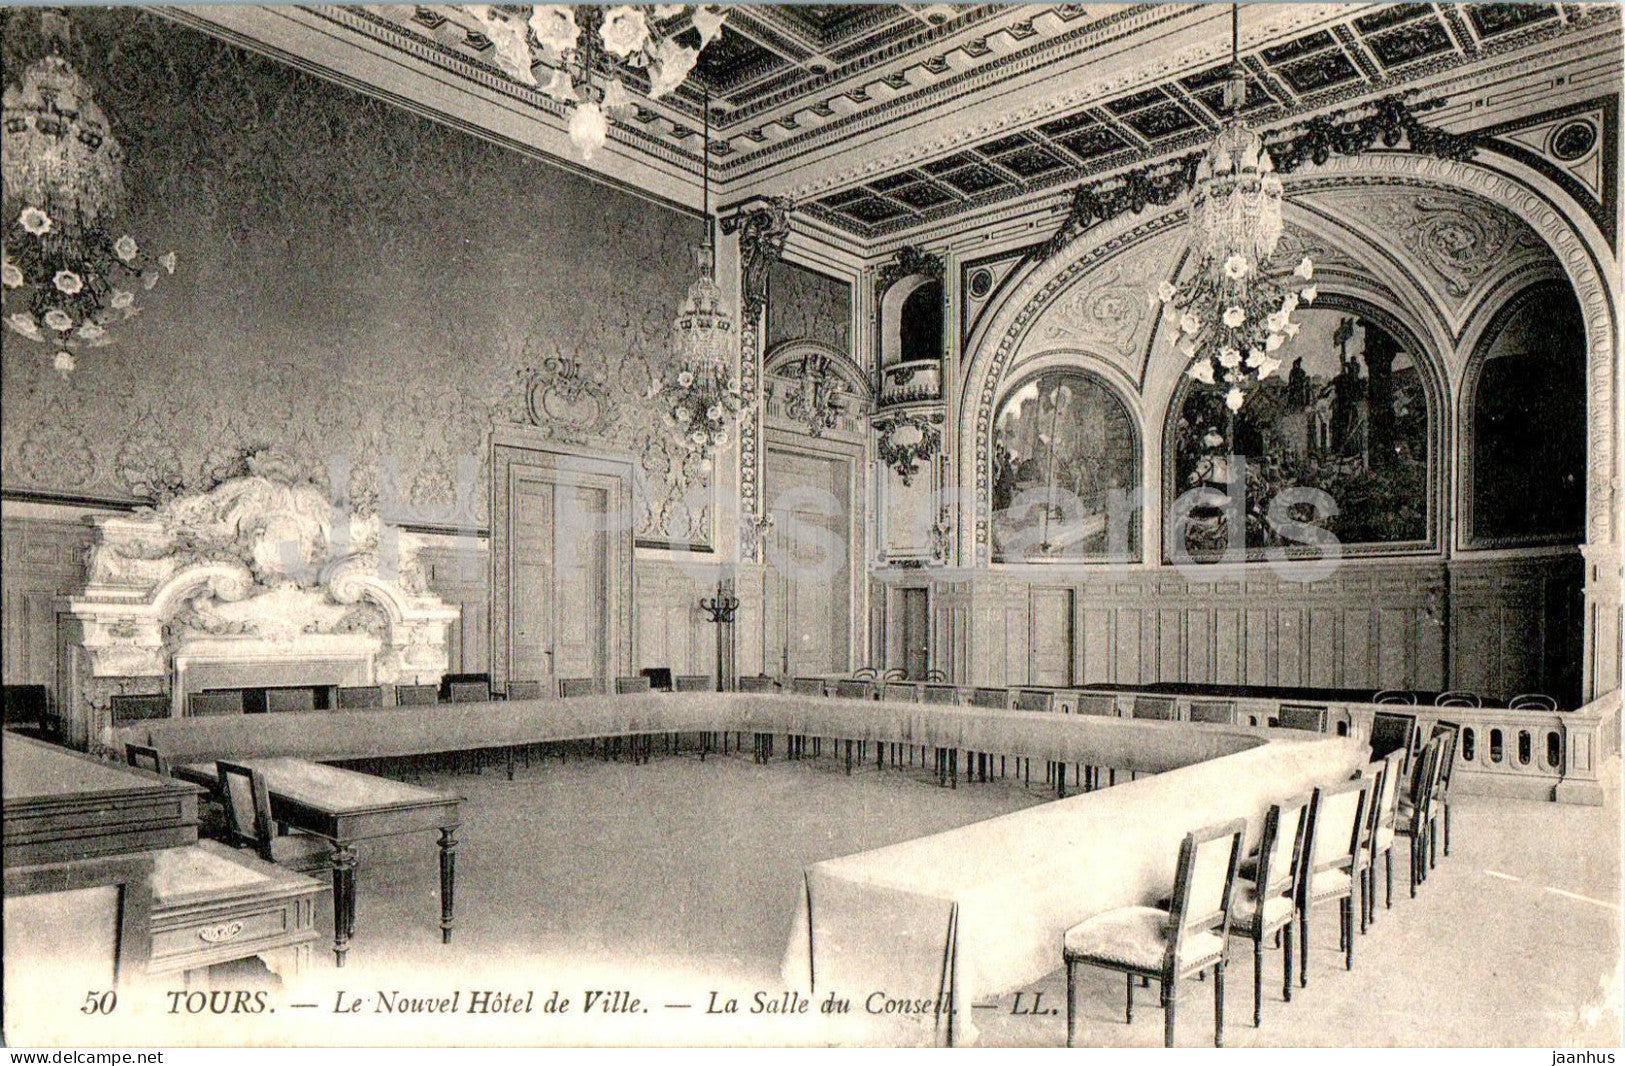 Tours - Le Nouvel Hotel de Ville - La Salle du Conseil - 50 - old postcard - France - used - JH Postcards